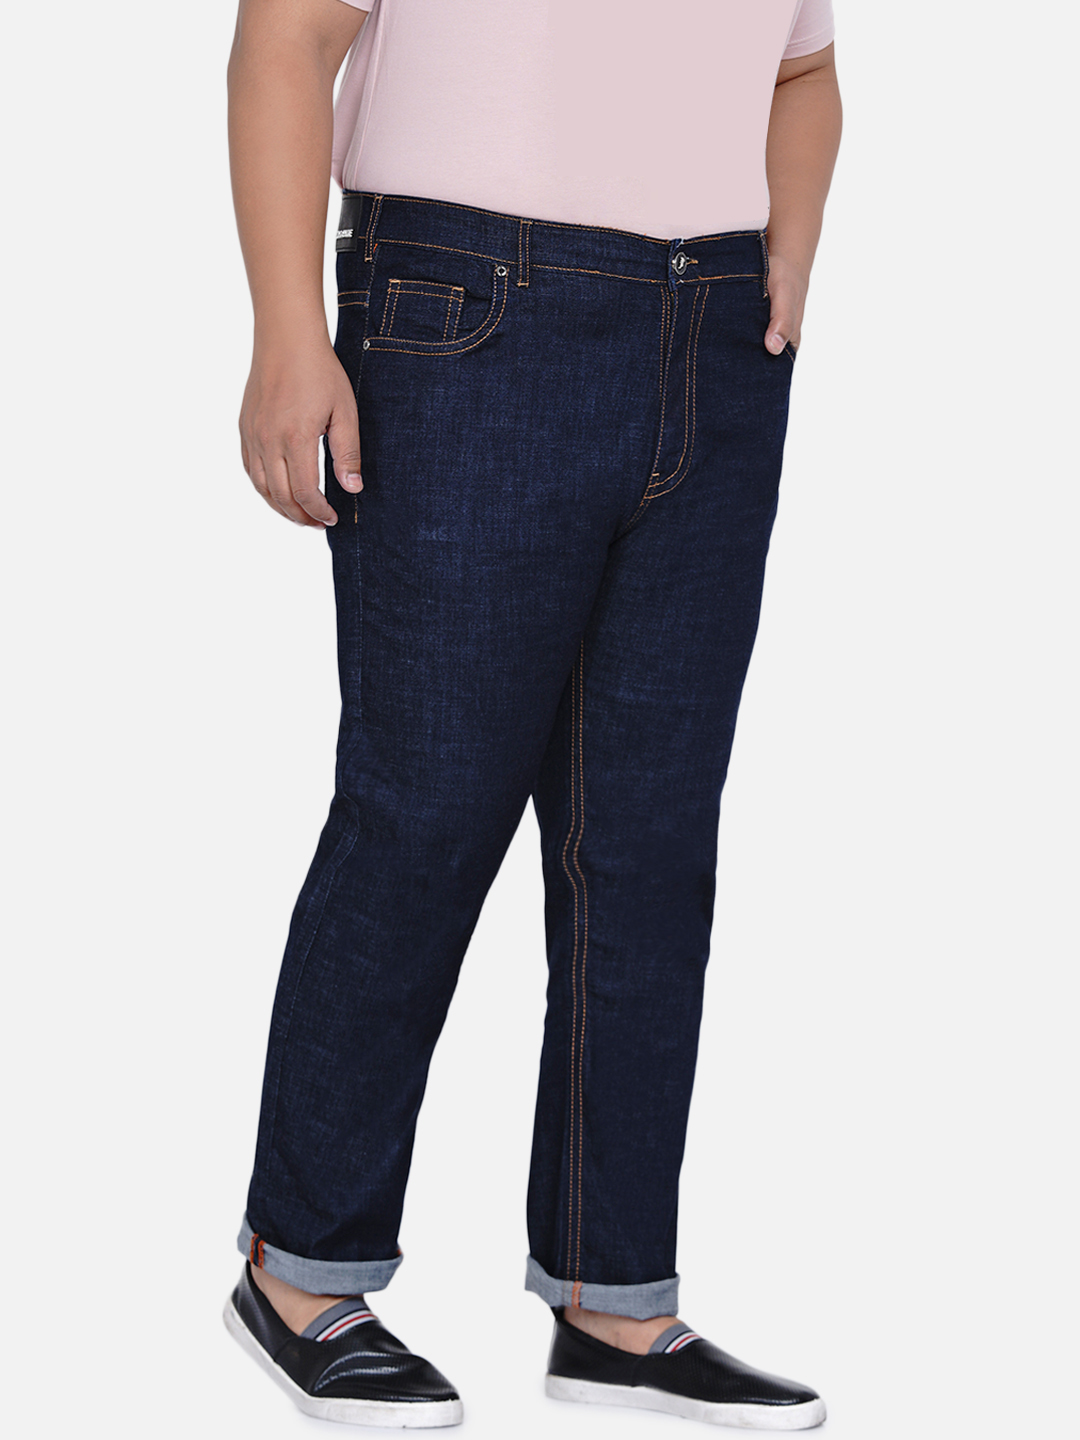 bottomwear/jeans/JPJ6035/jpj6035-4.jpg